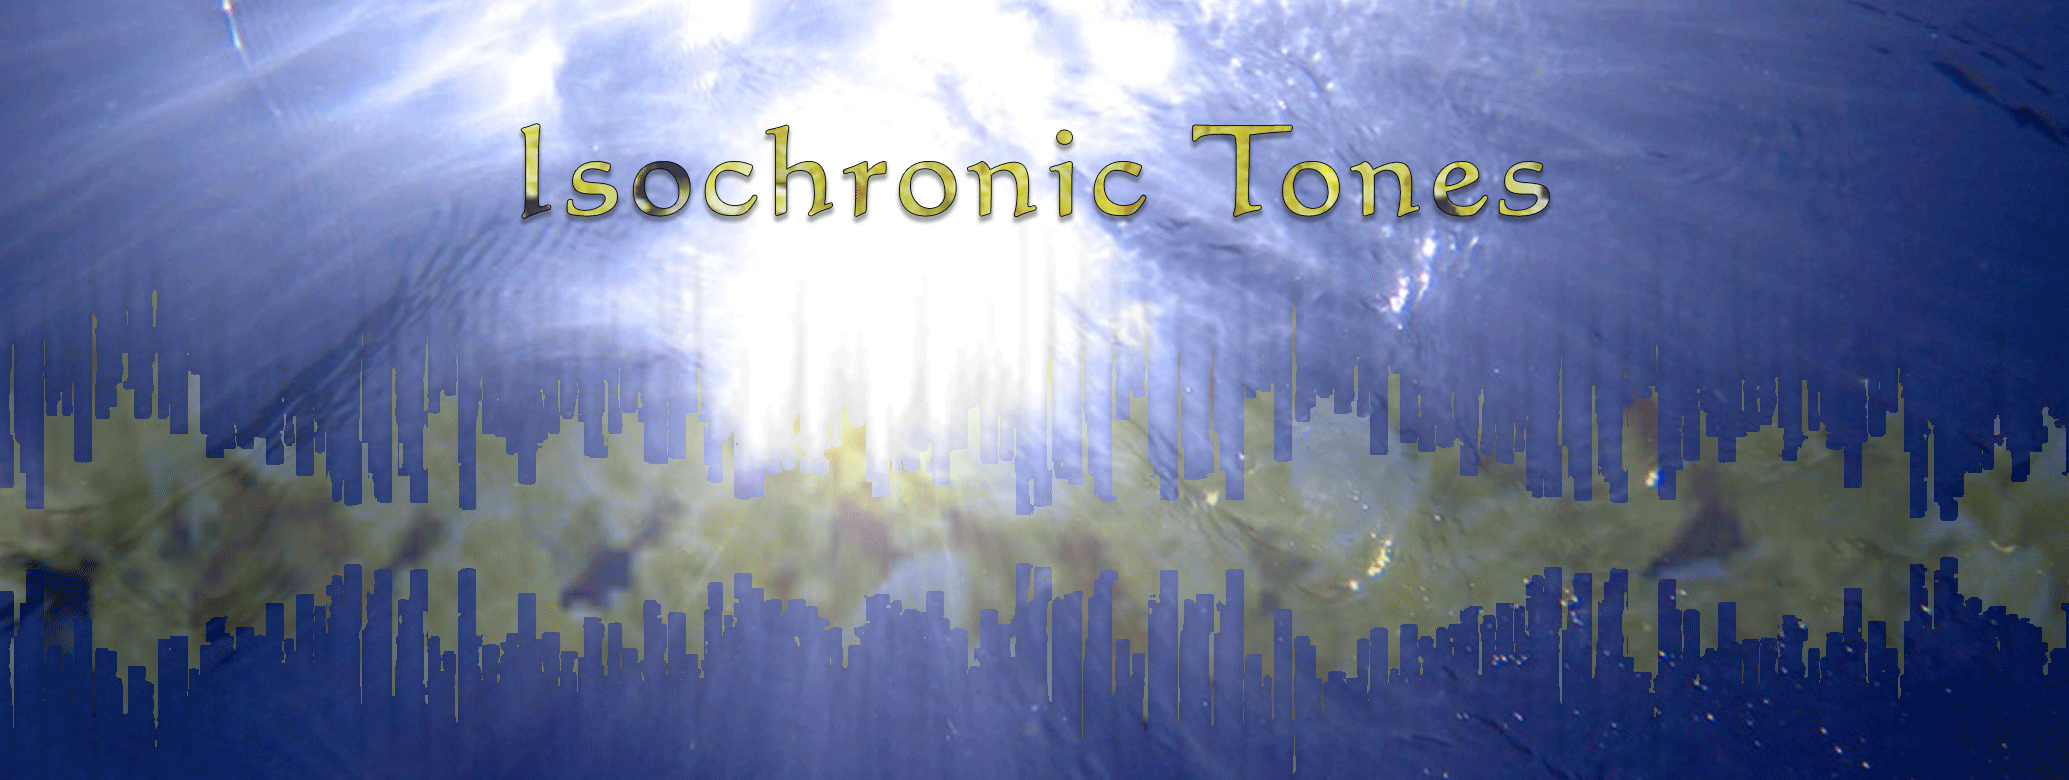 Isochronic Tones - Wirkung und Erfahrung